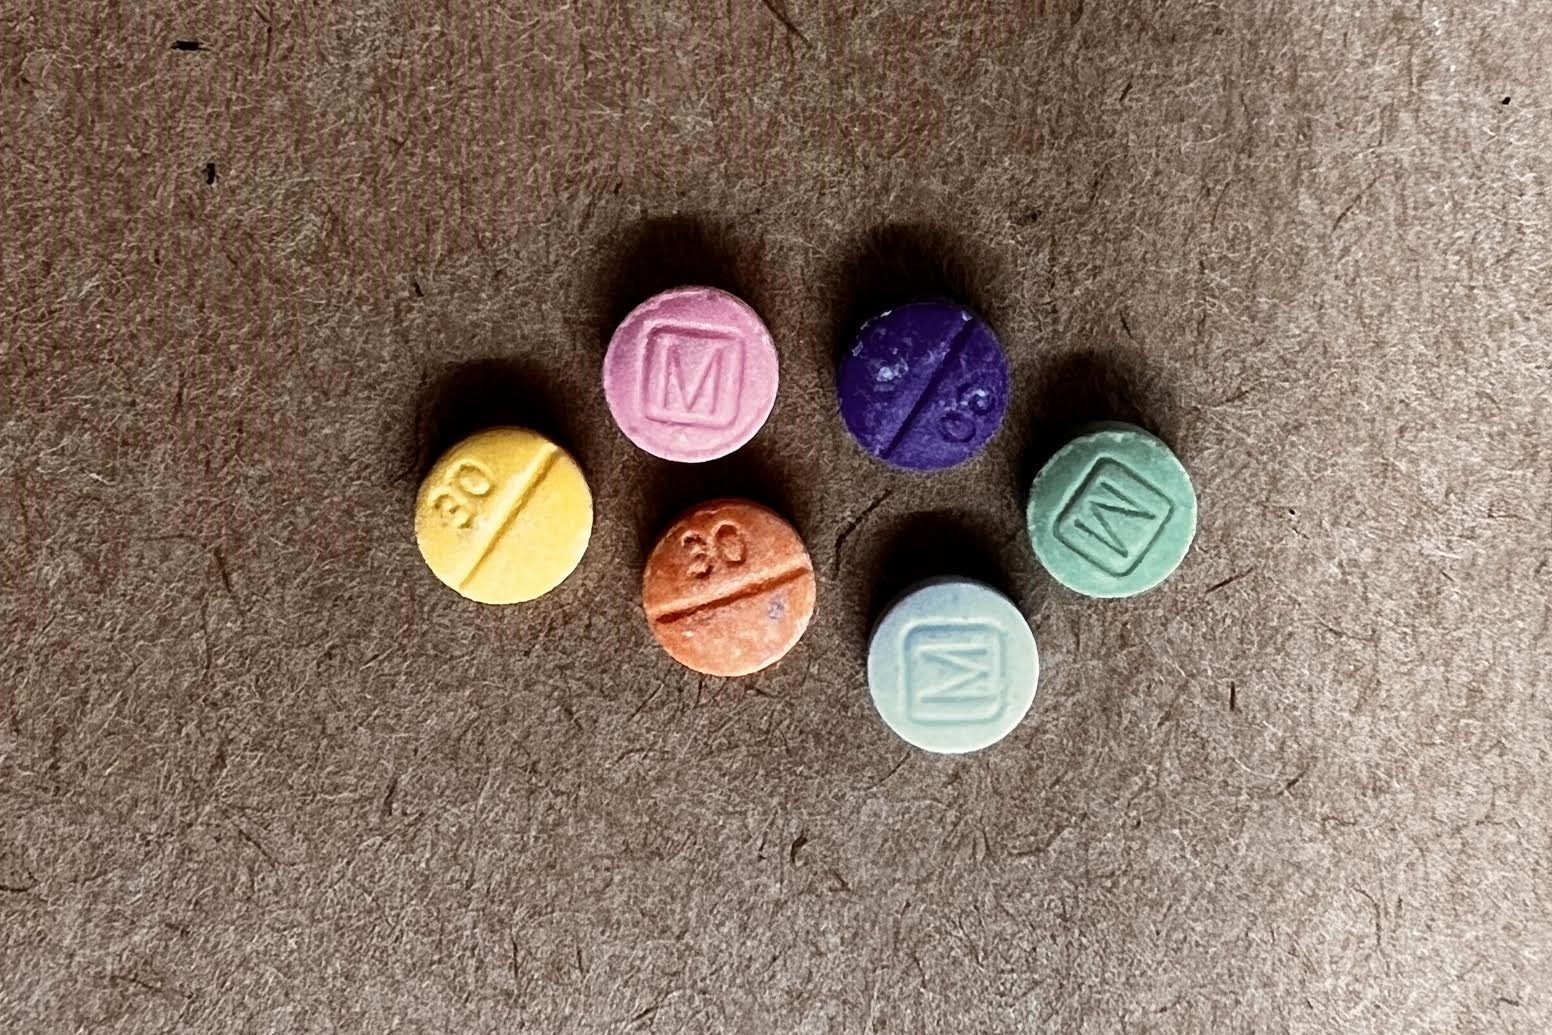 suspected fentanyl pills